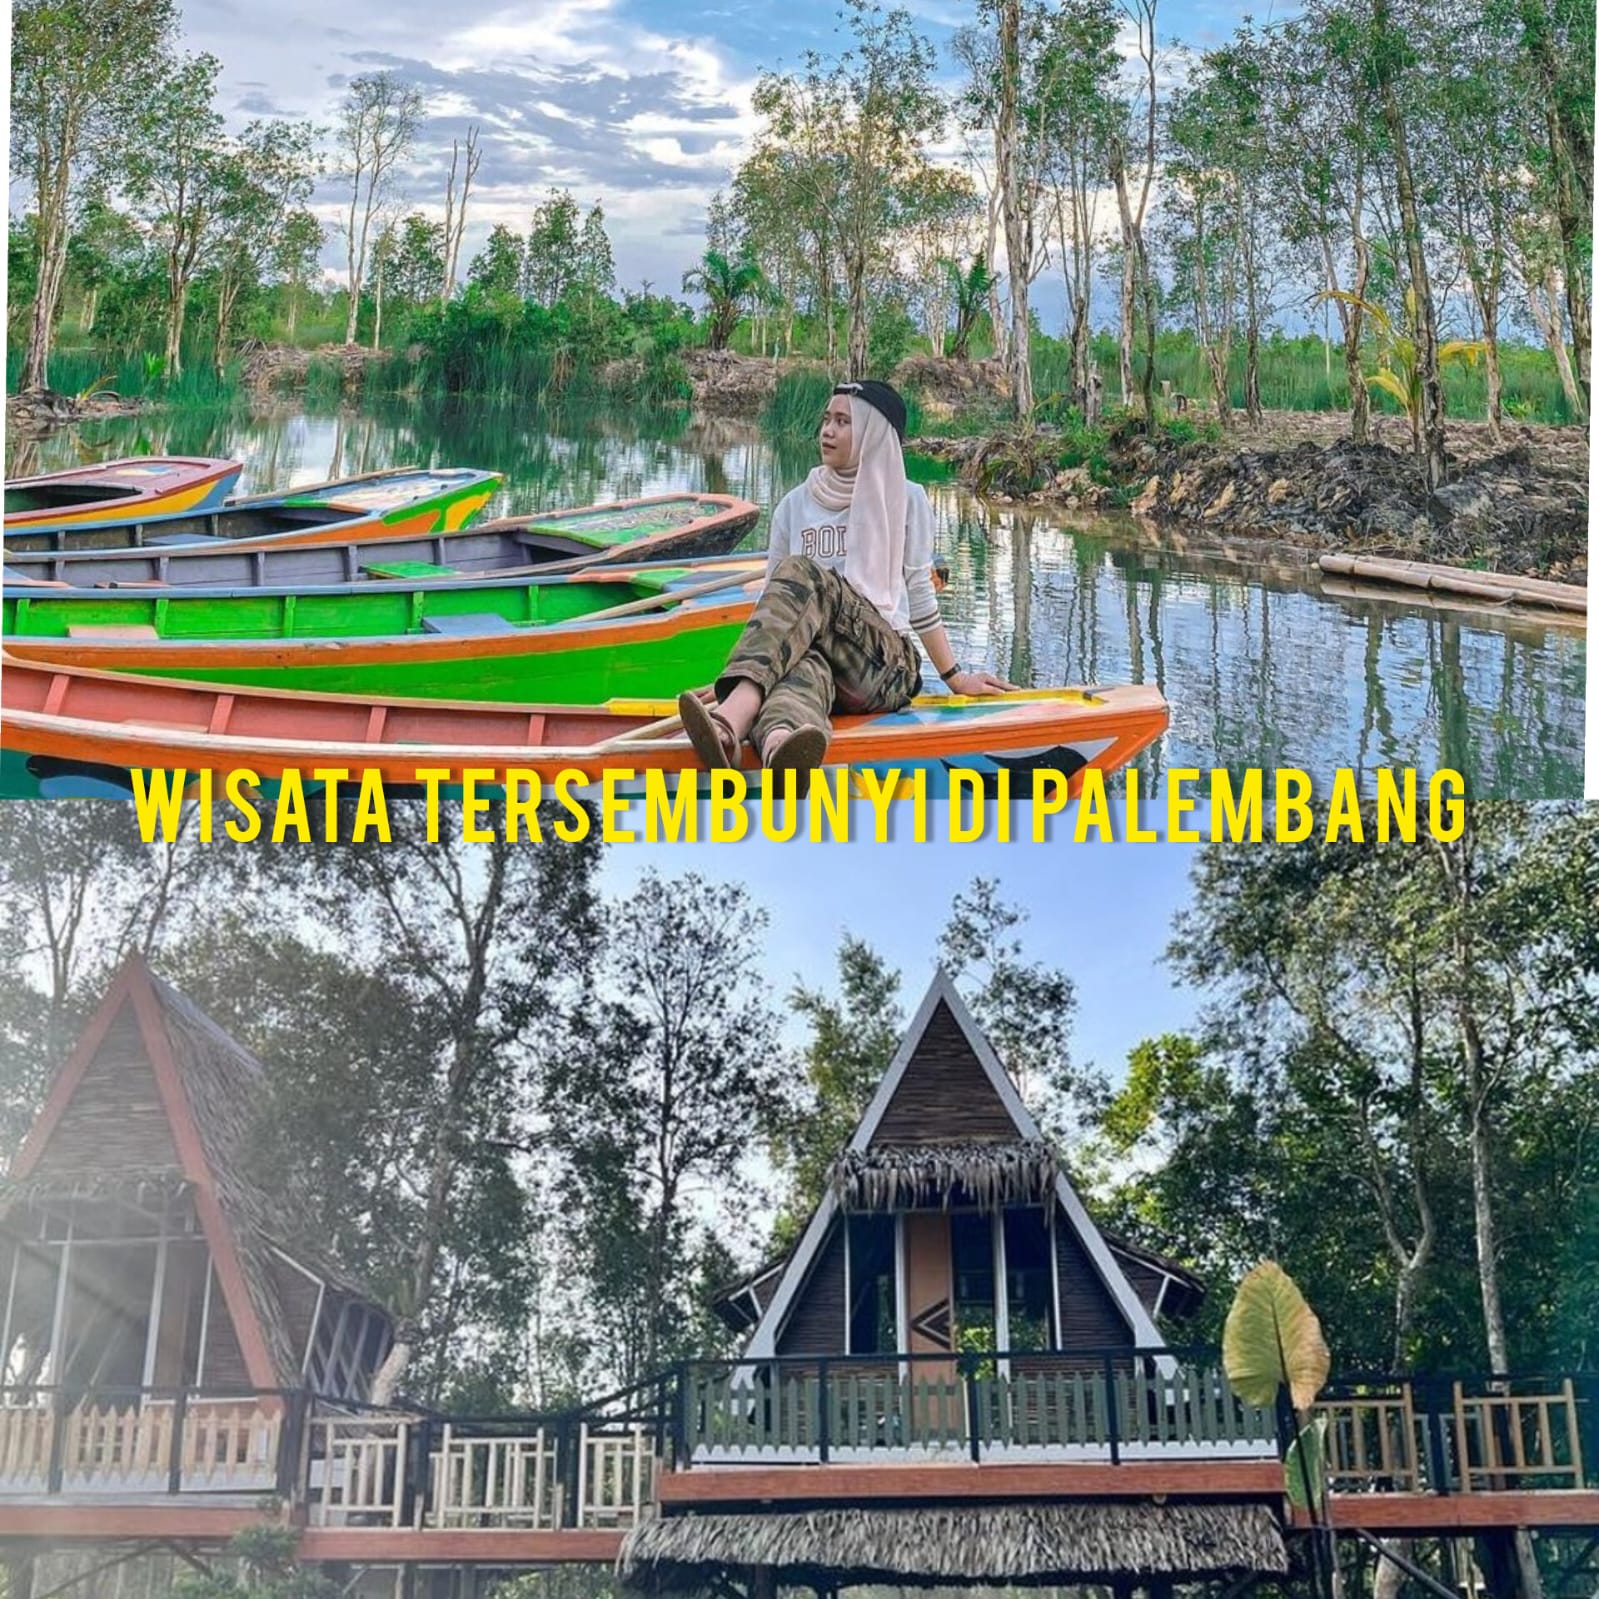 Wisata Tersembunyi di Palembang, Hanya 26 Menit Dari Pusat Kota, Bayar Rp5.000 Naik Perahu Sepuasnya